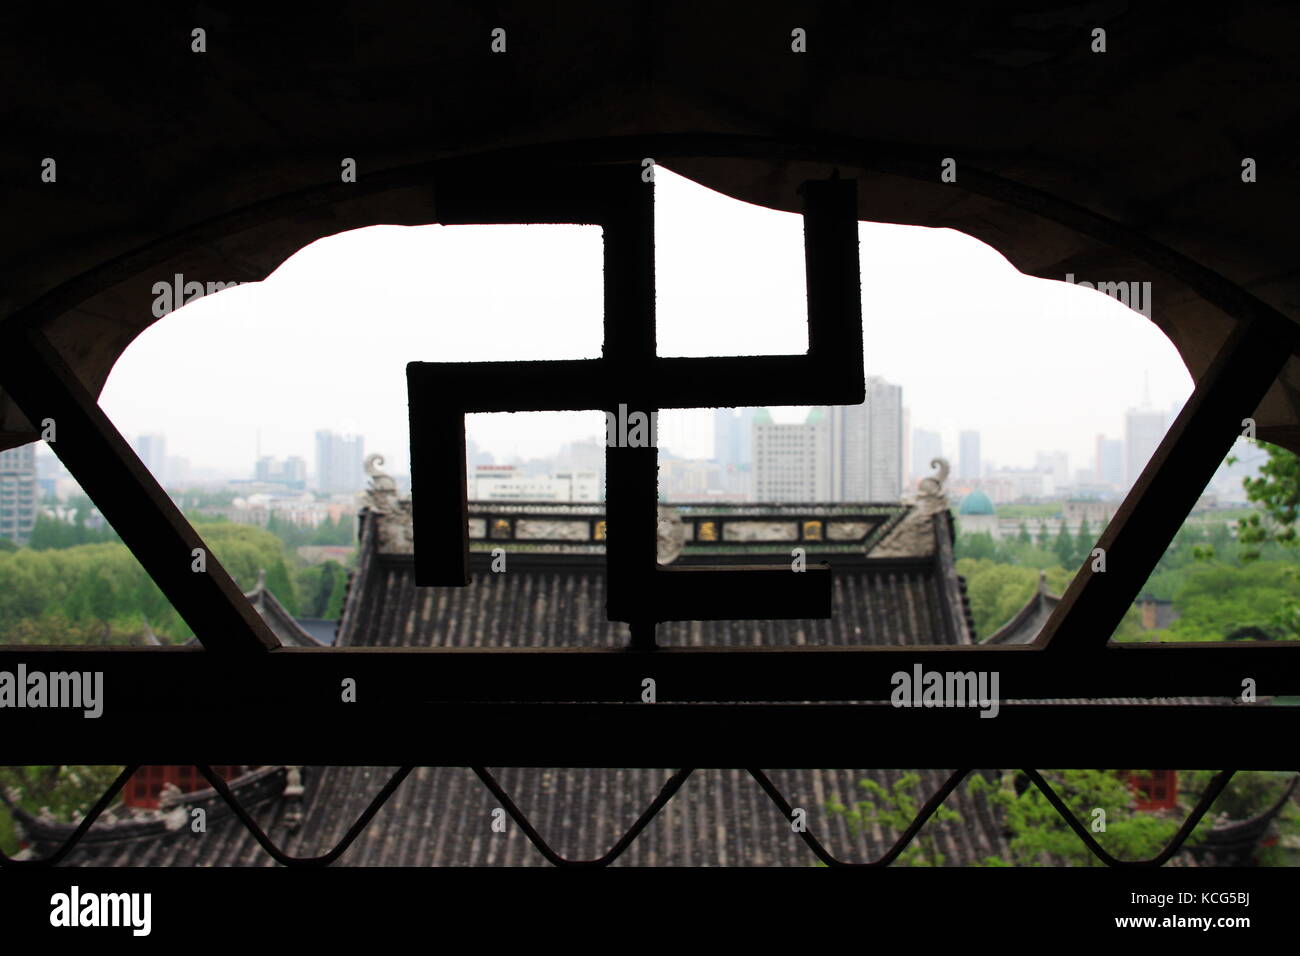 Un bâtiment et vue sur la ville derrière la croix gammée signe. à Nanjing Temple. 16, avril, 2009. Nanjing, Jiangsu, Chine Banque D'Images